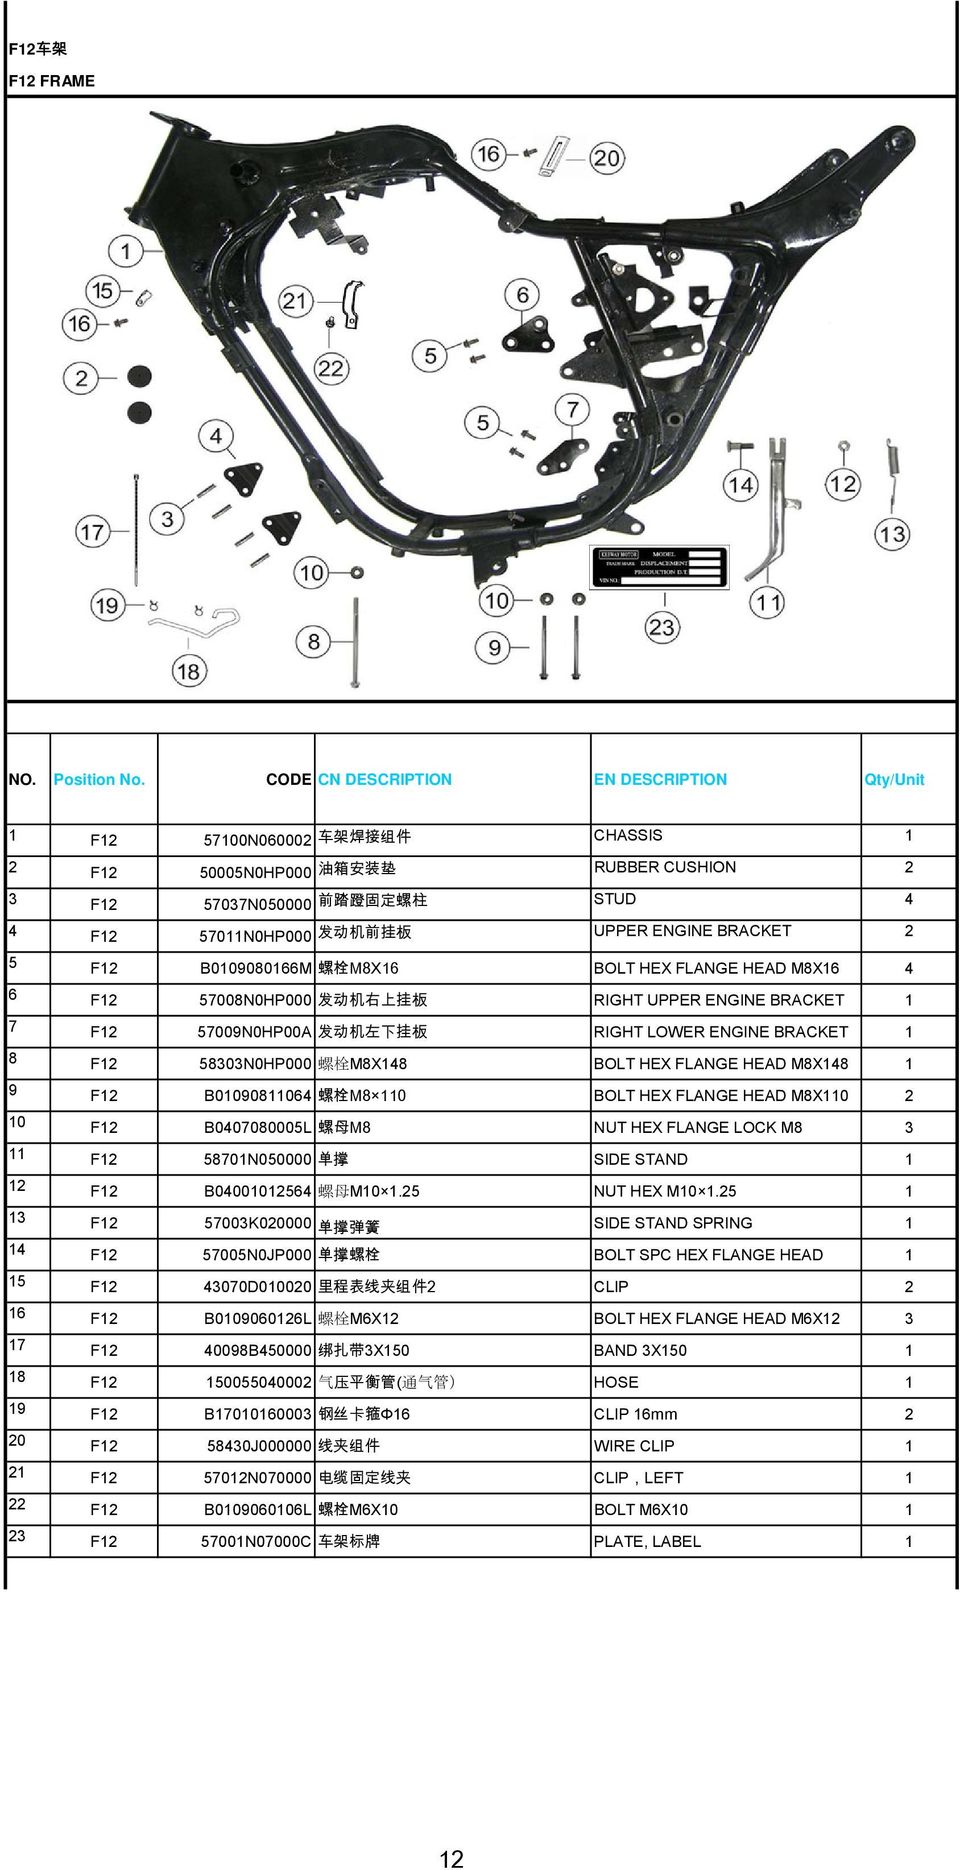 HEX FLANGE HEAD M8X48 9 F2 B00908064 螺 栓 M8 0 BOLT HEX FLANGE HEAD M8X0 2 0 F2 B0407080005L 螺 母 M8 NUT HEX FLANGE LOCK M8 3 F2 5870N050000 单 撑 SIDE STAND 2 F2 B040002564 螺 母 M0.25 NUT HEX M0.